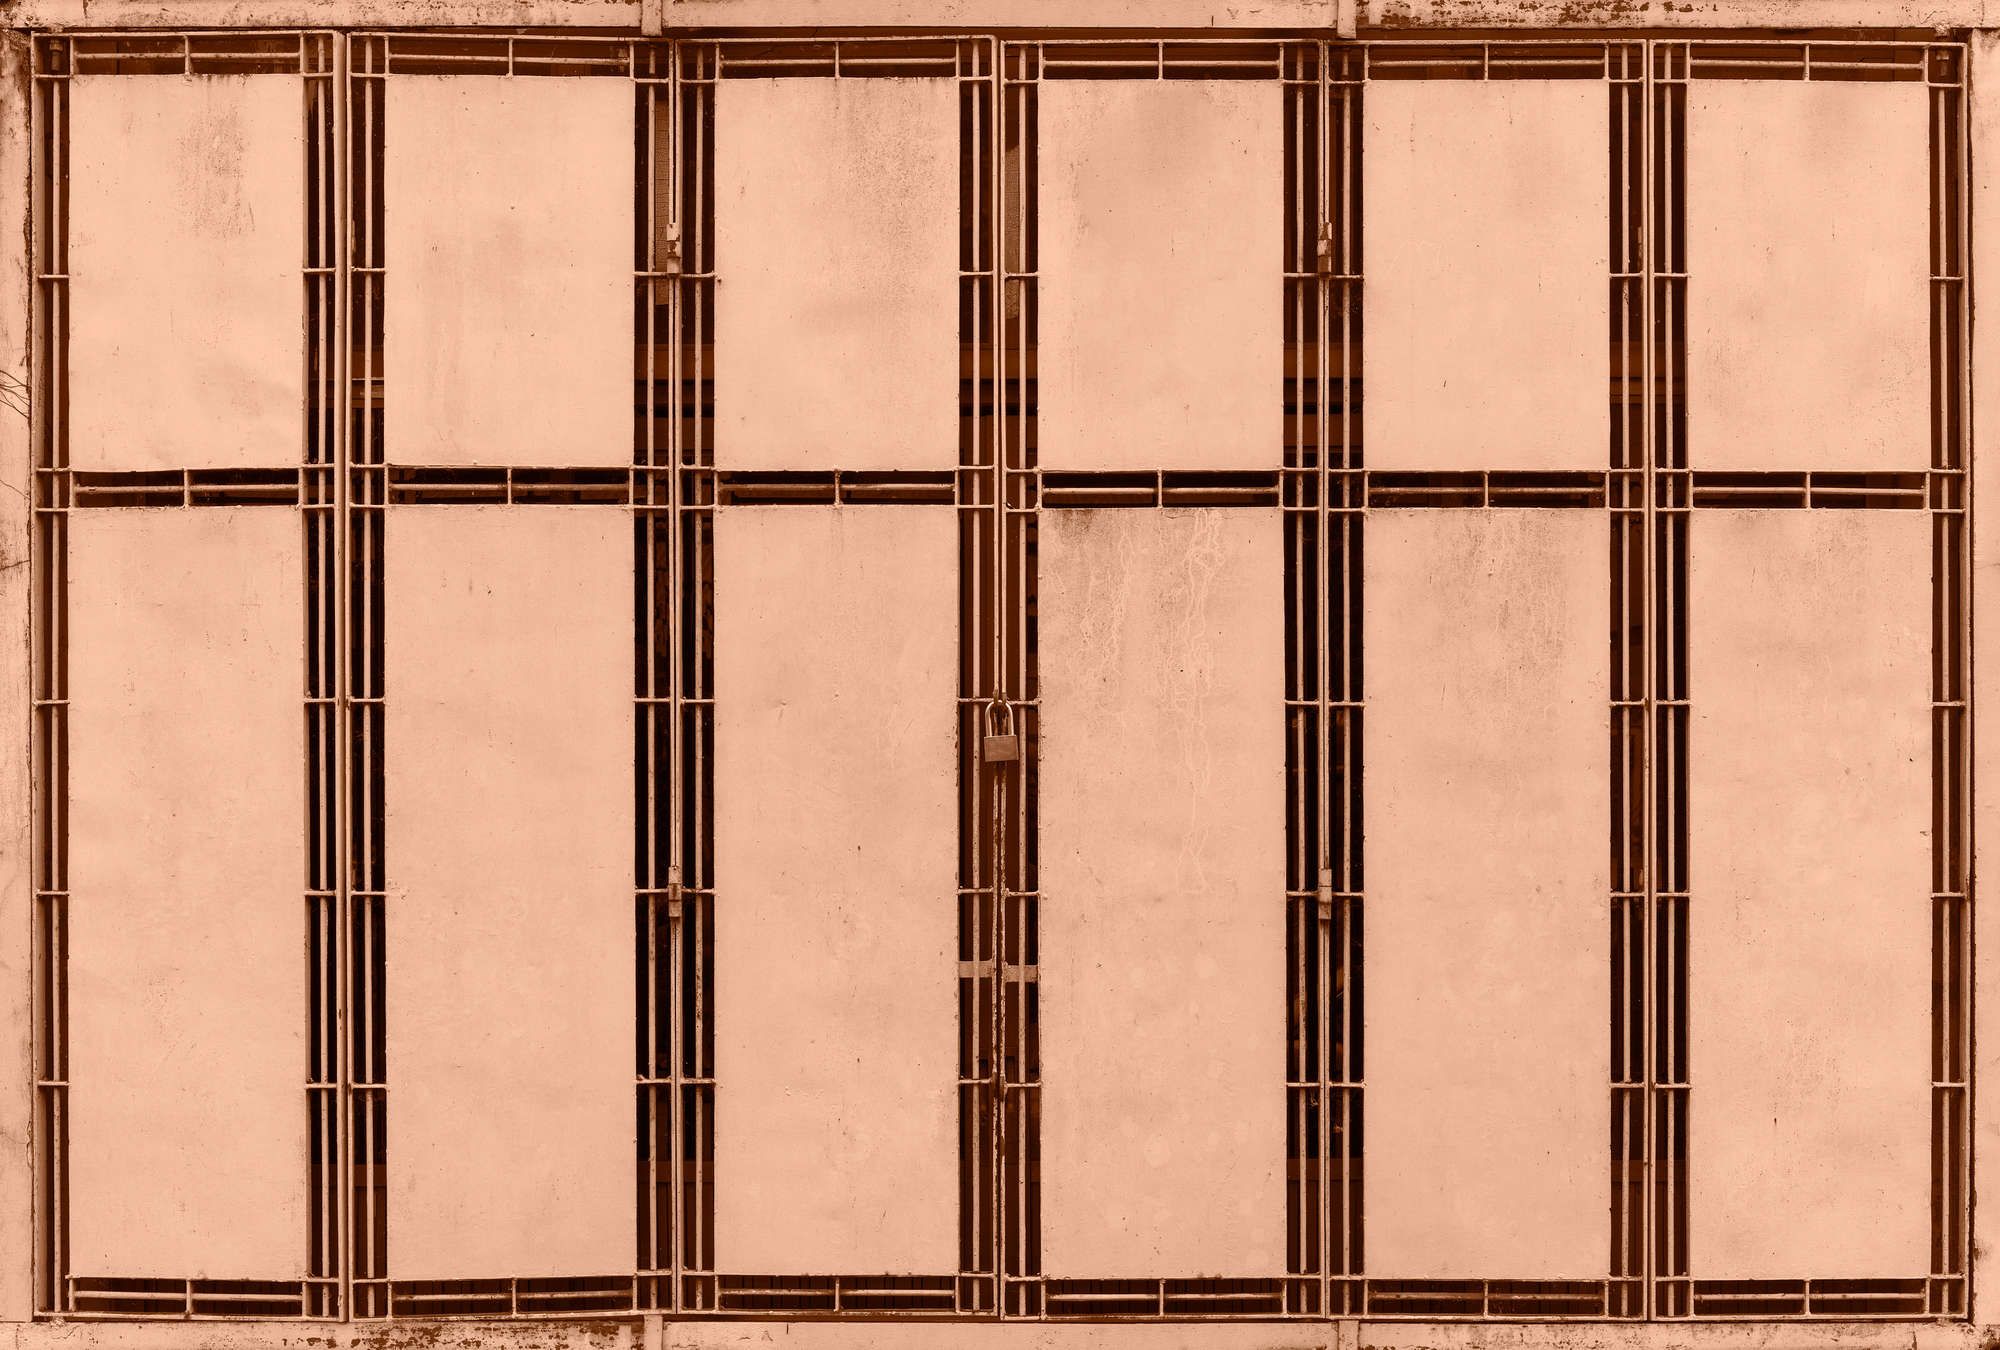             papier peint en papier panoramique »jaipur« - détail d'une clôture métallique couleur saumon - intissé lisse, légèrement nacré
        